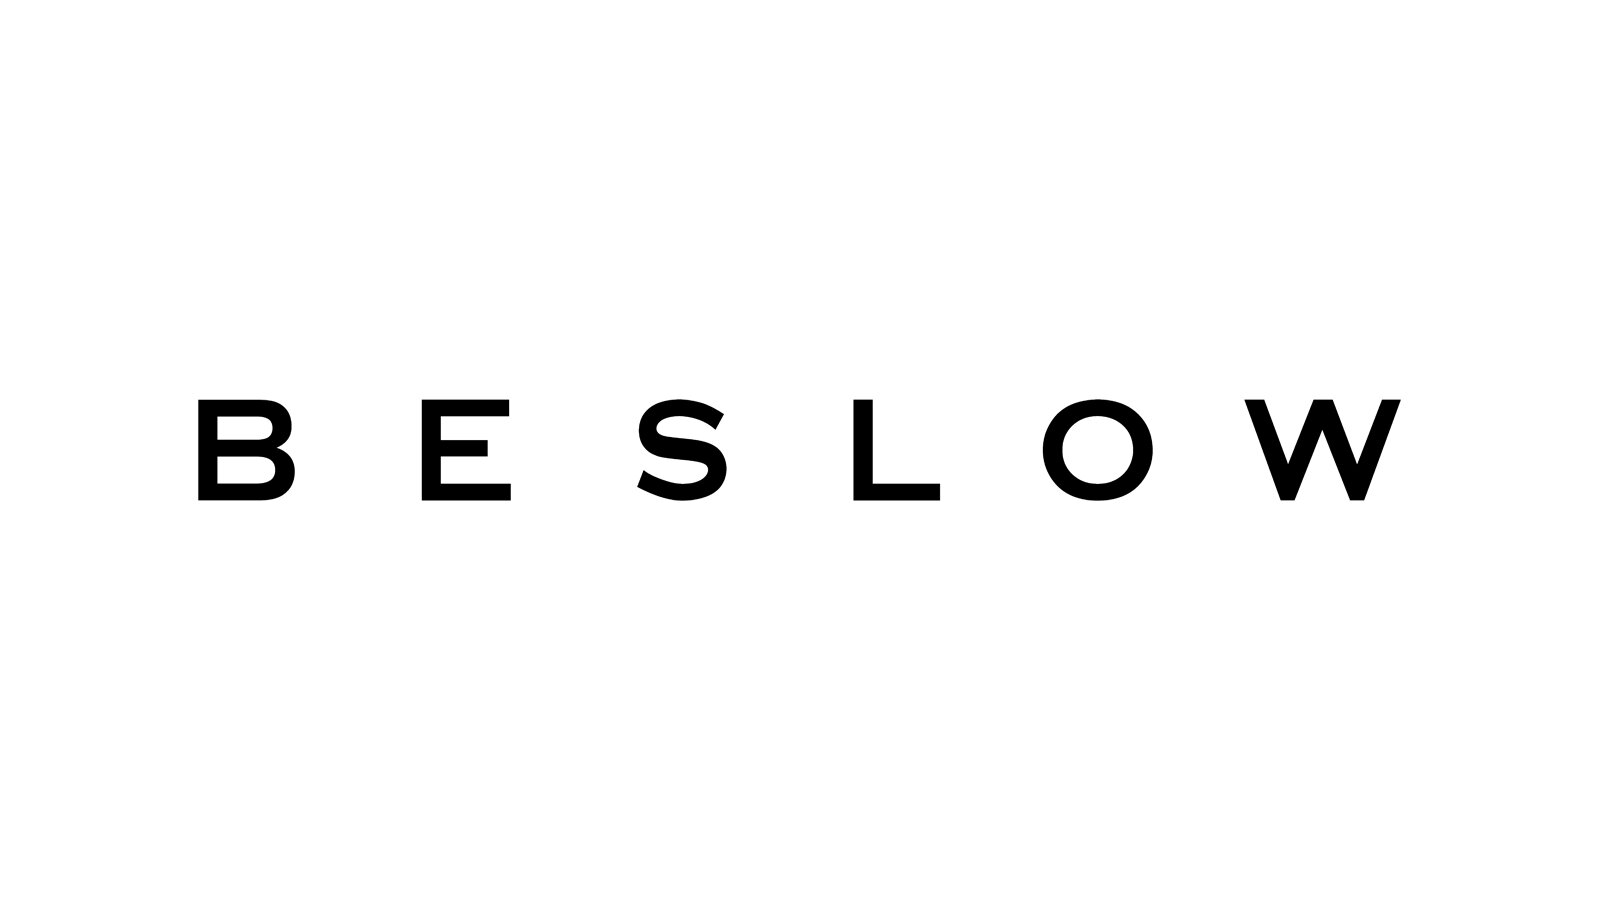 Beslow-Resized.jpg